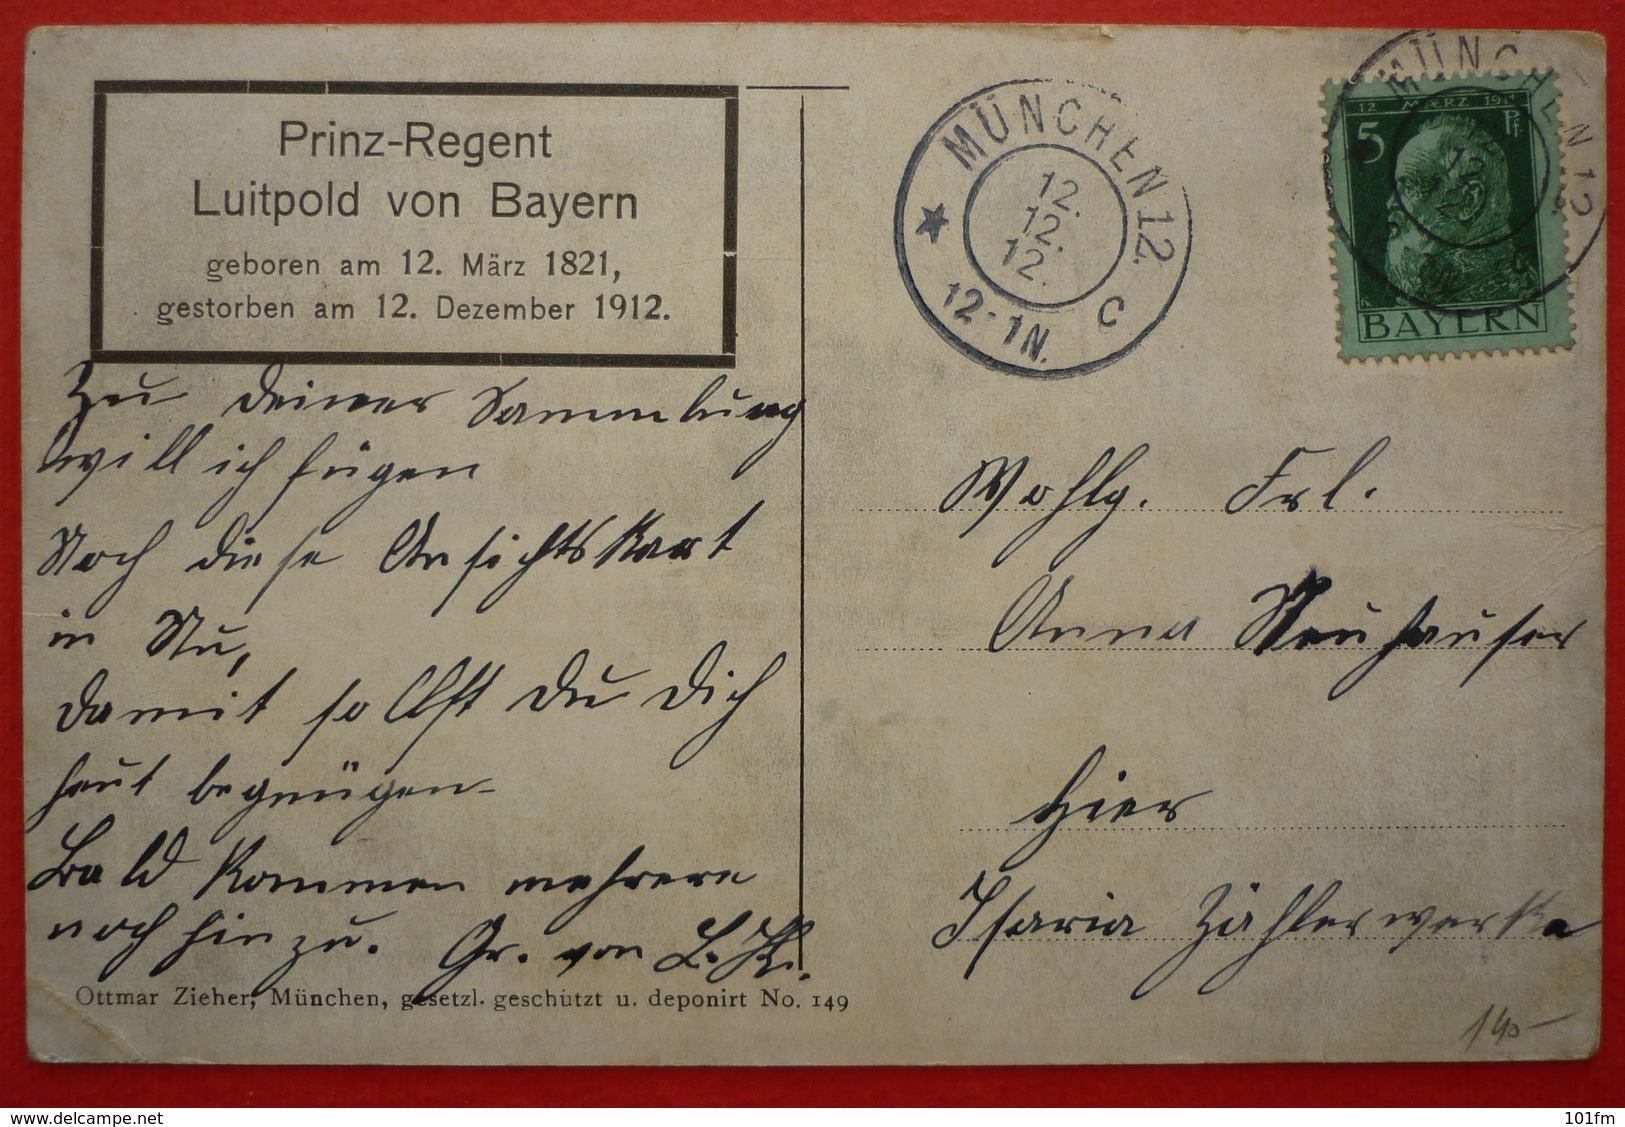 GERMANY - PRINZ REGENT LUITPOLD VON BAYERN 1912 - Familias Reales